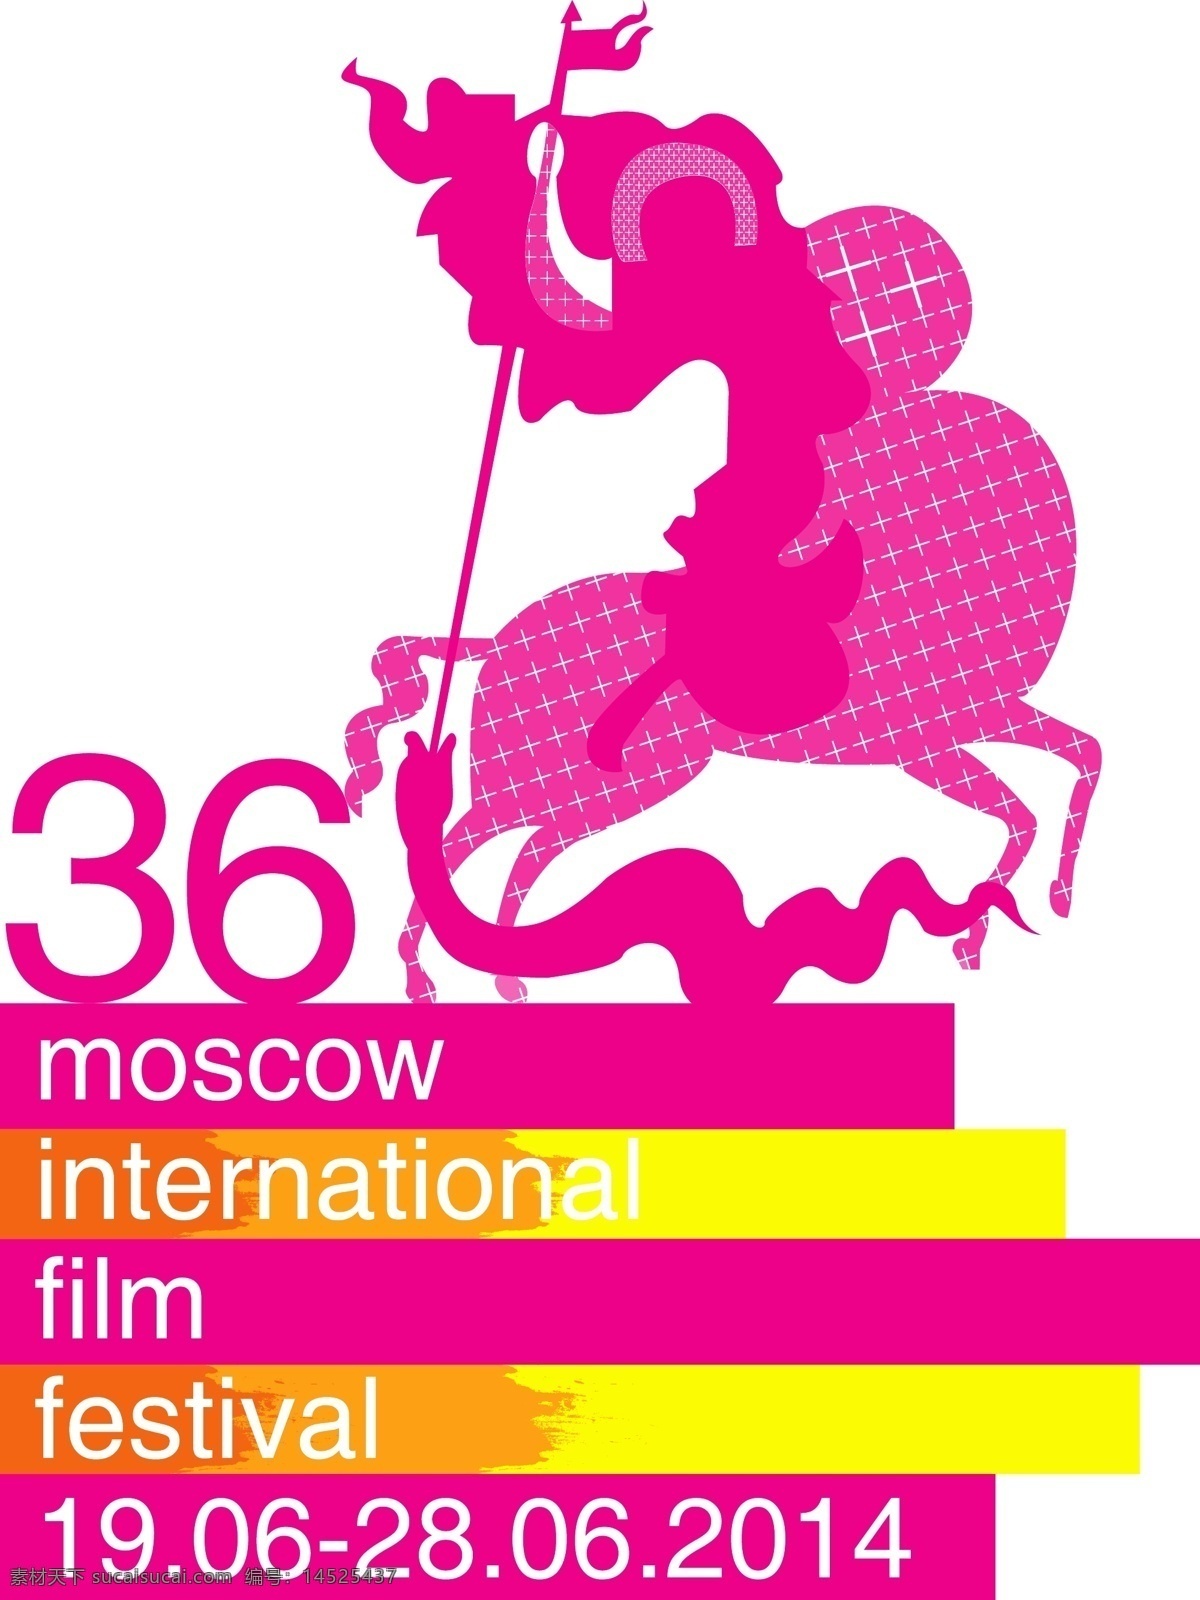 莫斯科 国际电影节 电影 影视 紫色 白色